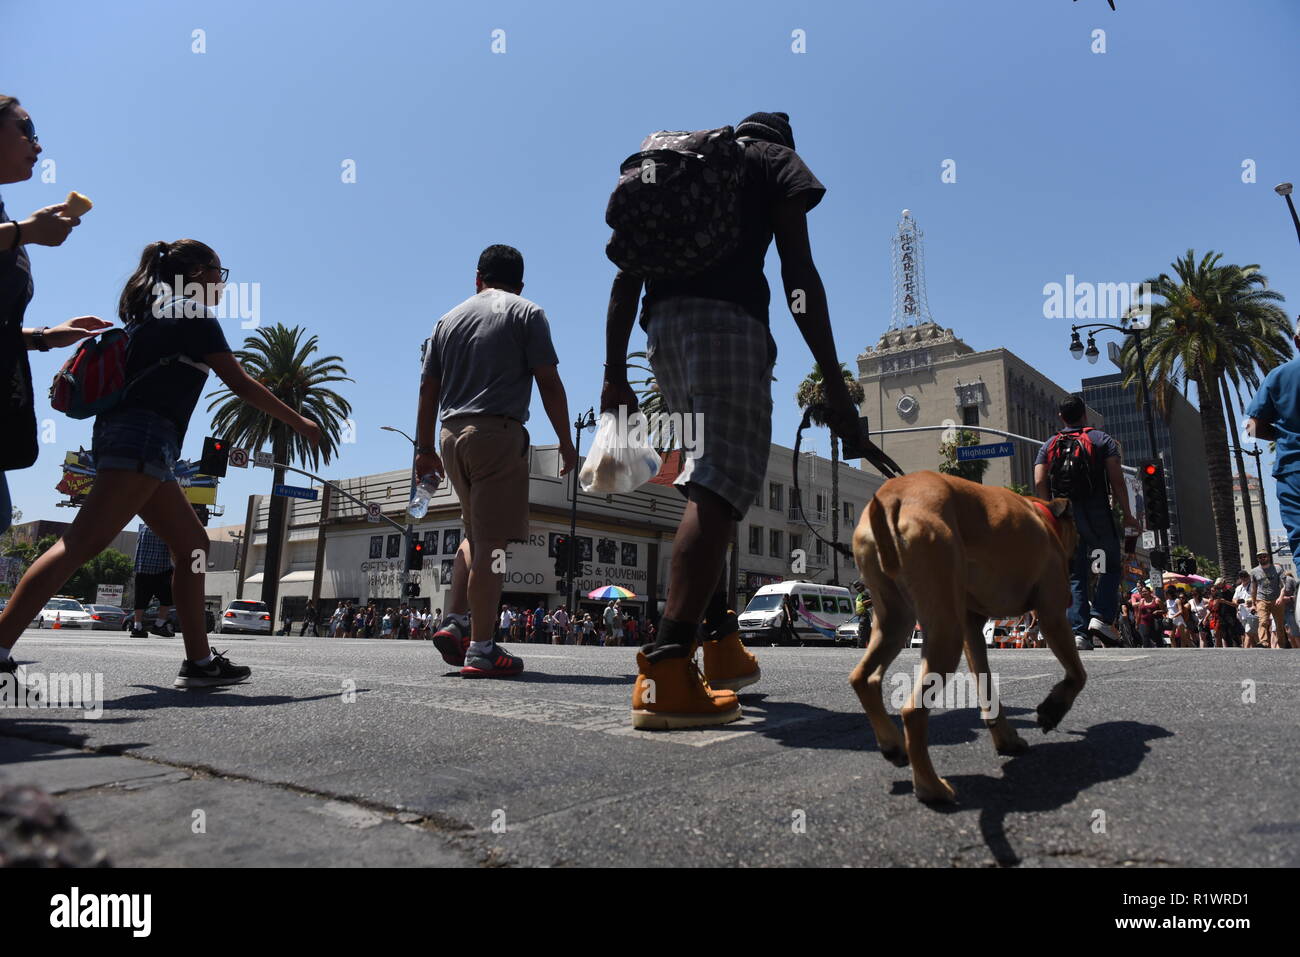 HOLLYWOOD - 7 août 2018 : Les personnes qui traversent la route à partir de l'angle faible point de vue sur Hollywood boulevard à Hollywood, CA. Banque D'Images